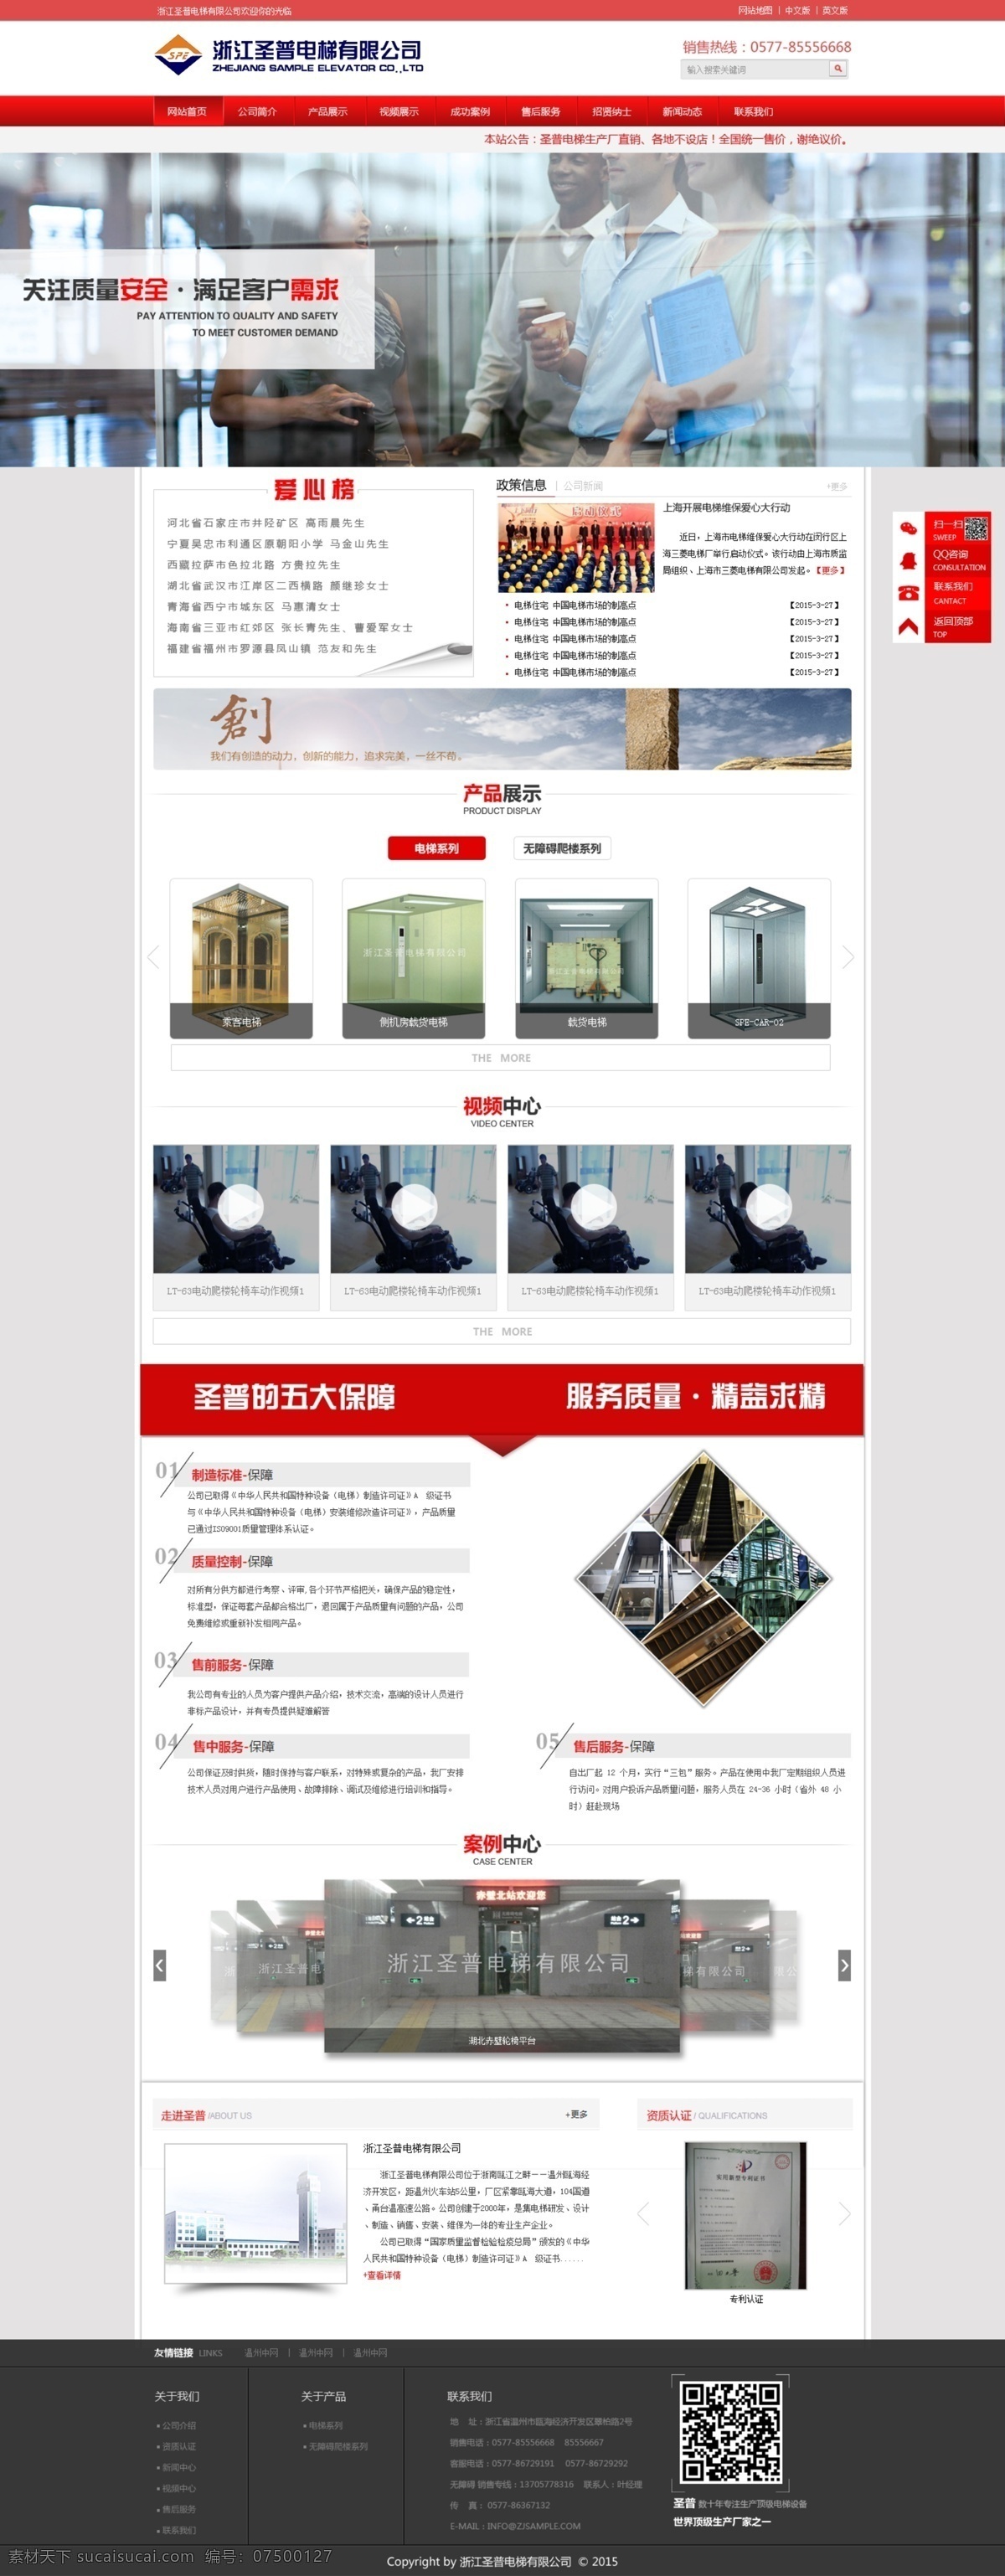 红色 电梯 企业 公司 销售网站 网站 销售 原创设计 原创网页设计